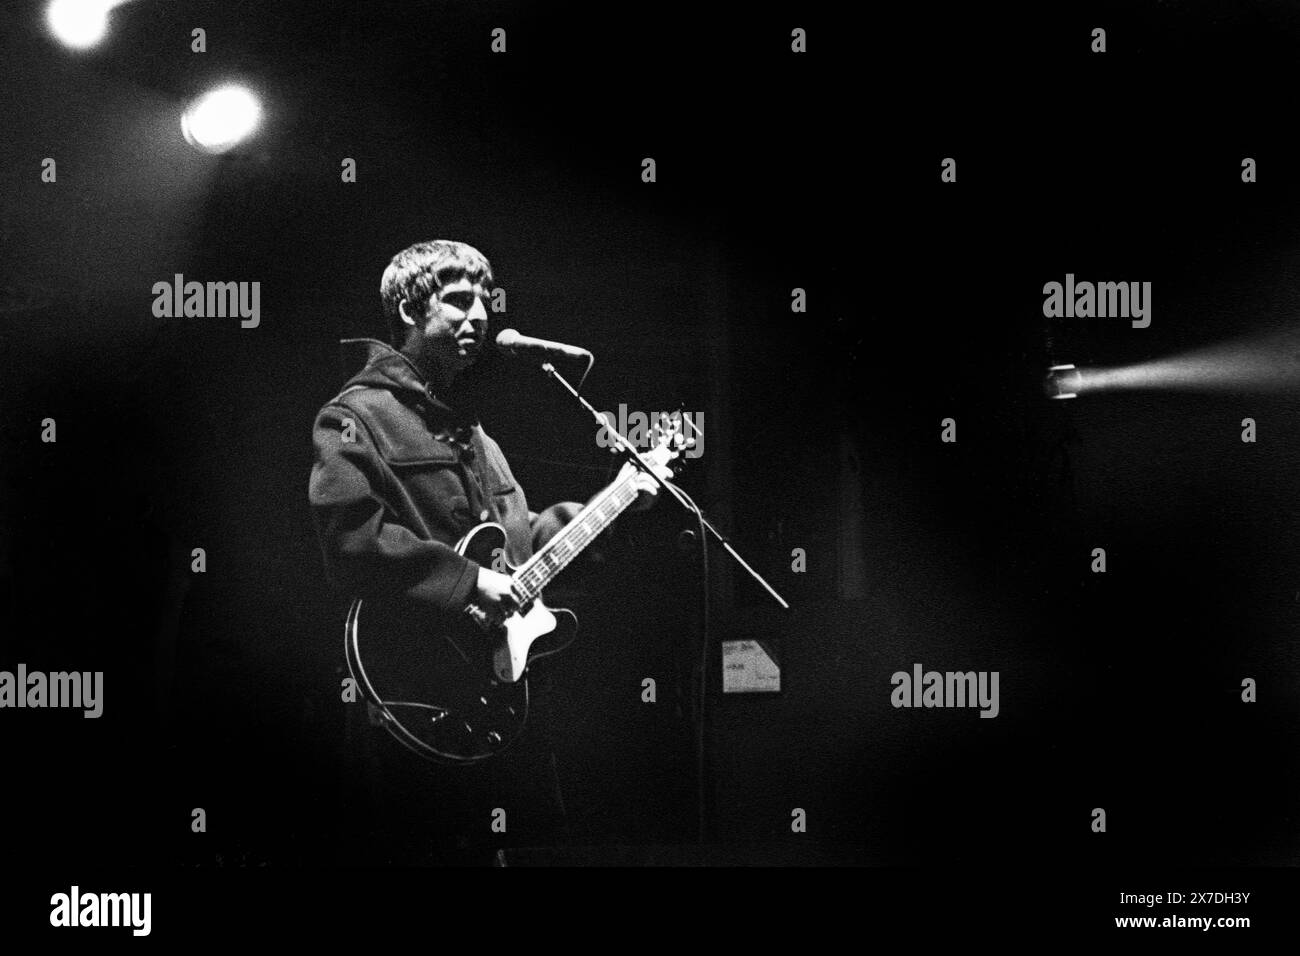 NOEL GALLAGHER, OASIS, ERSTE GLASTONBURY-HEADLINE, 1995: Noel Gallagher während des Encore als die Manchester-Rockband Oasis die Hauptrolle auf der Main Stage auf dem Höhepunkt ihres Ruhmes beim Glastonbury Festival, Pilton Farm, Somerset, England, 24. Juni 1995. 1995 feierte das Festival sein 25-jähriges Bestehen. In diesem Jahr gab es keine Pyramidenphase, da sie abgebrannt war. Foto: ROB WATKINS Stockfoto